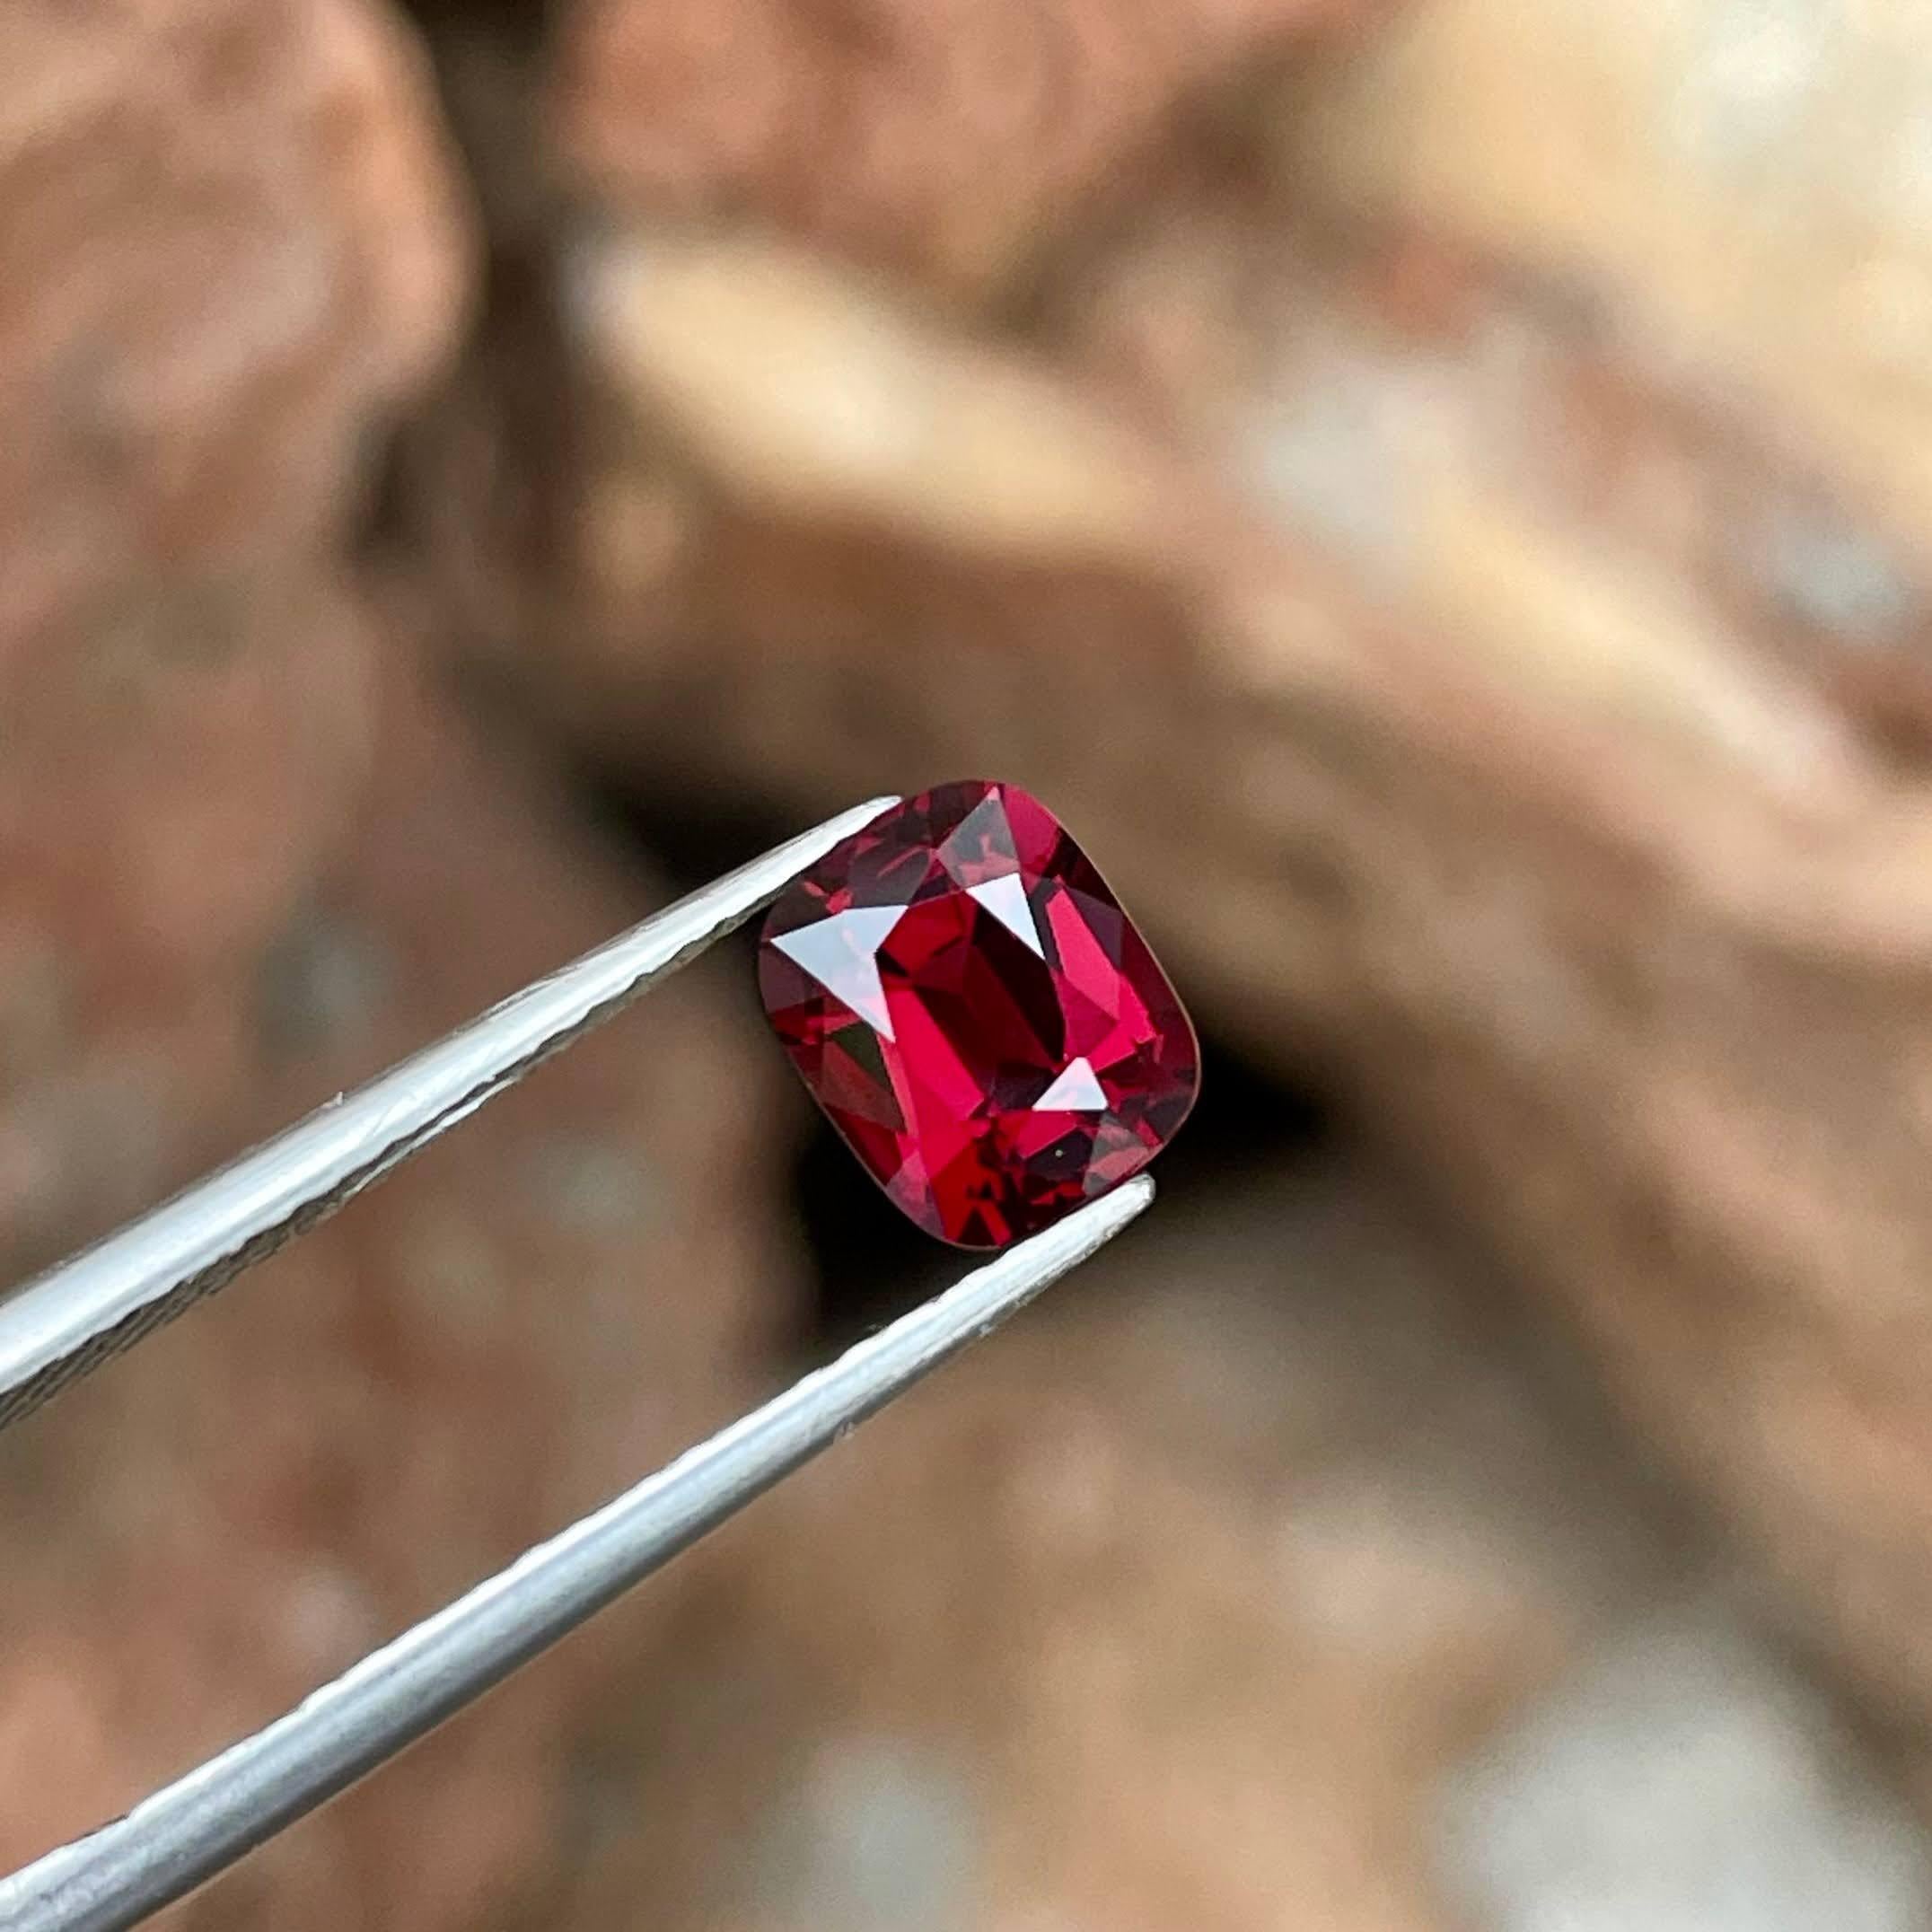 Poids 1,40 carats 
Dimensions 7,0x5,8x4,0 mm
Traitement aucun 
Origine Birmanie 
Clarté de l'œil 
Coussin de forme 
Coupe fantaisie coussin




Admirez l'attrait de cette exquise spinelle rouge naturelle de Birmanie de 1.40 carats, une pierre